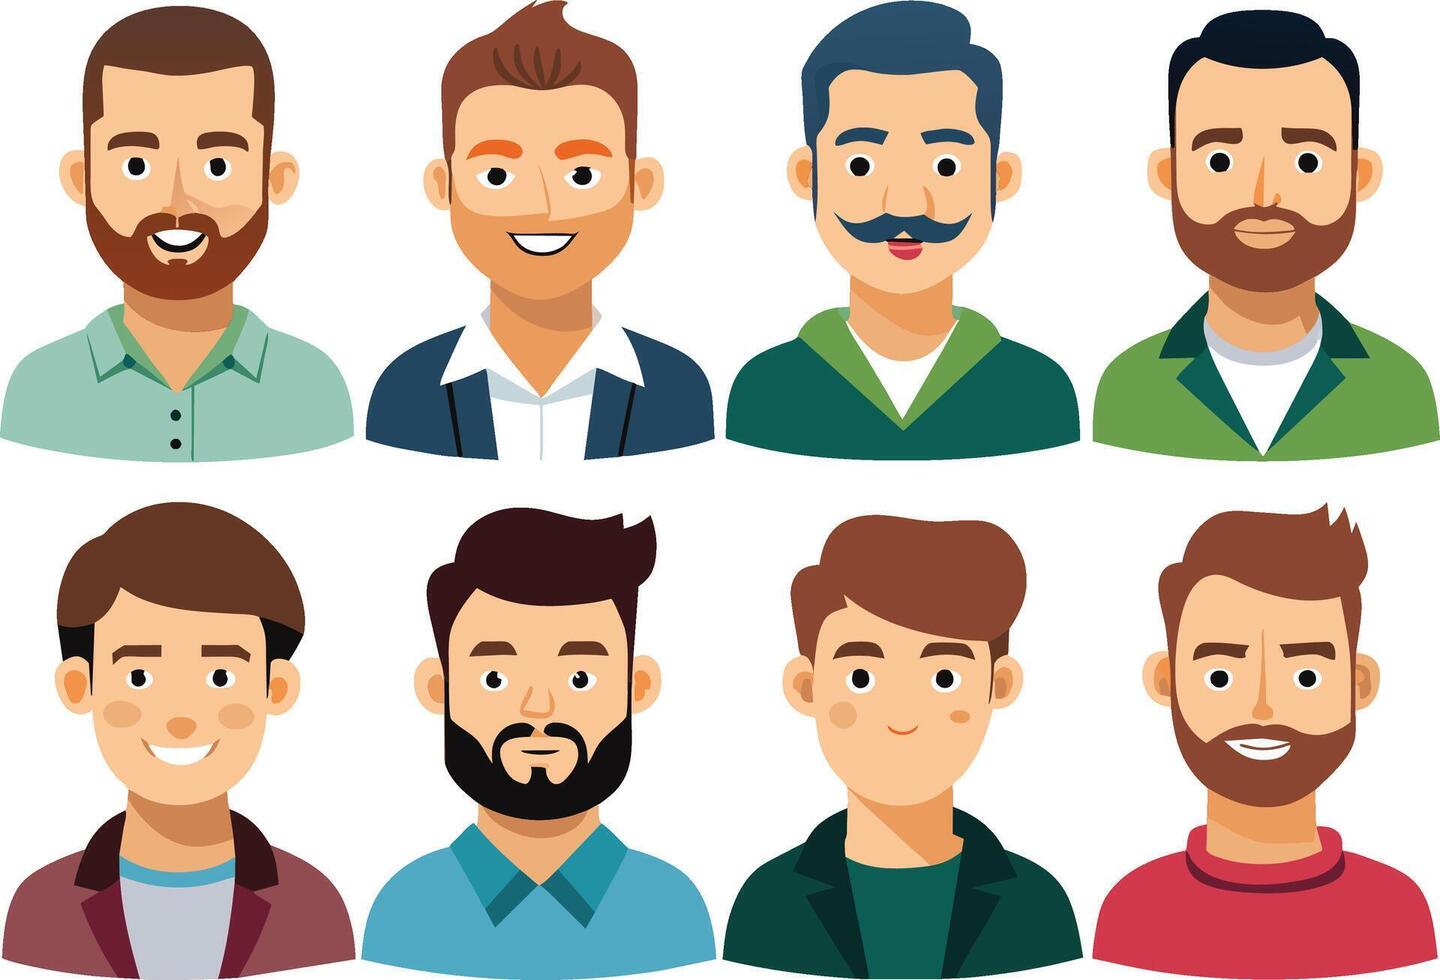 uppsättning av män avatars med annorlunda frisyrer. vektor illustration.